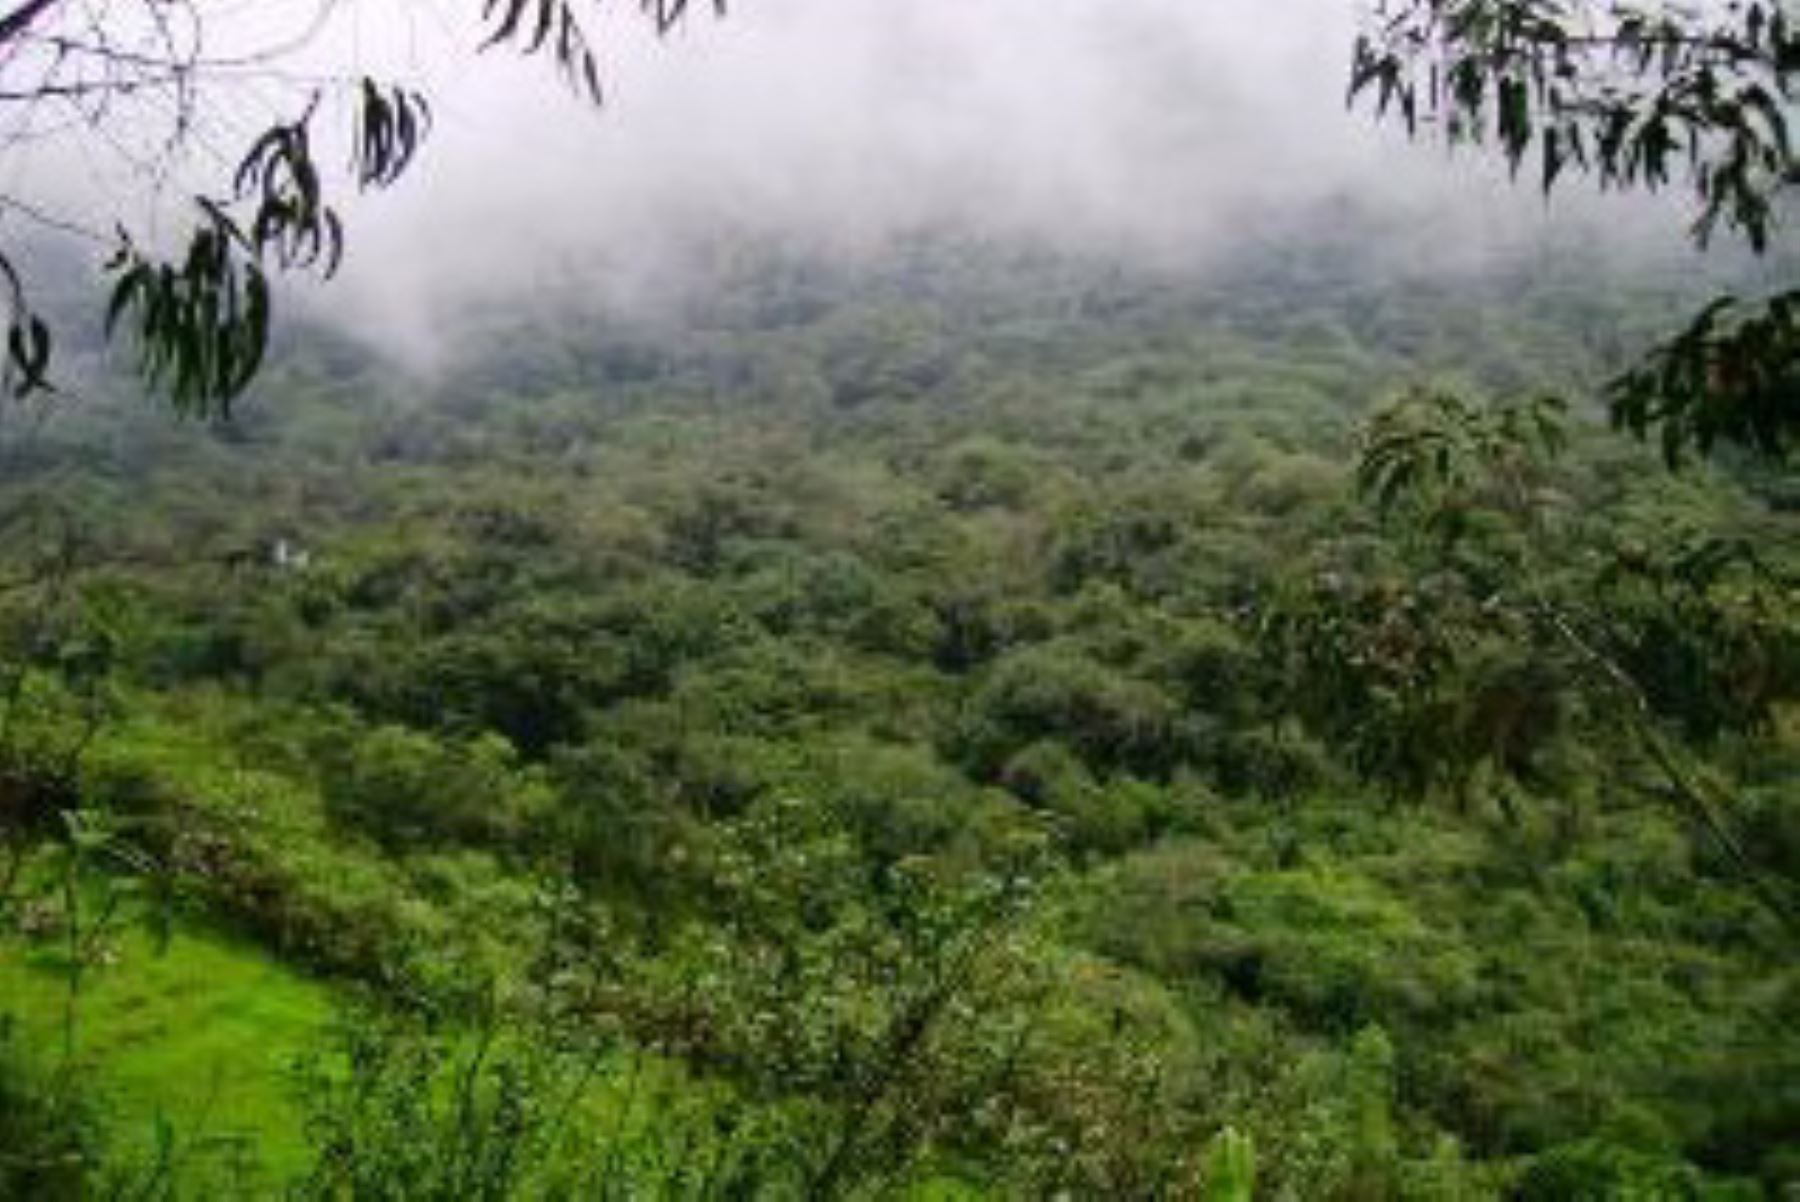 El departamento de Cajamarca sumó su sétima Área de Conservación Privada (ACP), con el reconocimiento del predio “Bosque Cachil” por parte del Ministerio del Ambiente (Minam), ubicado en el distrito y provincia de Contumazá.